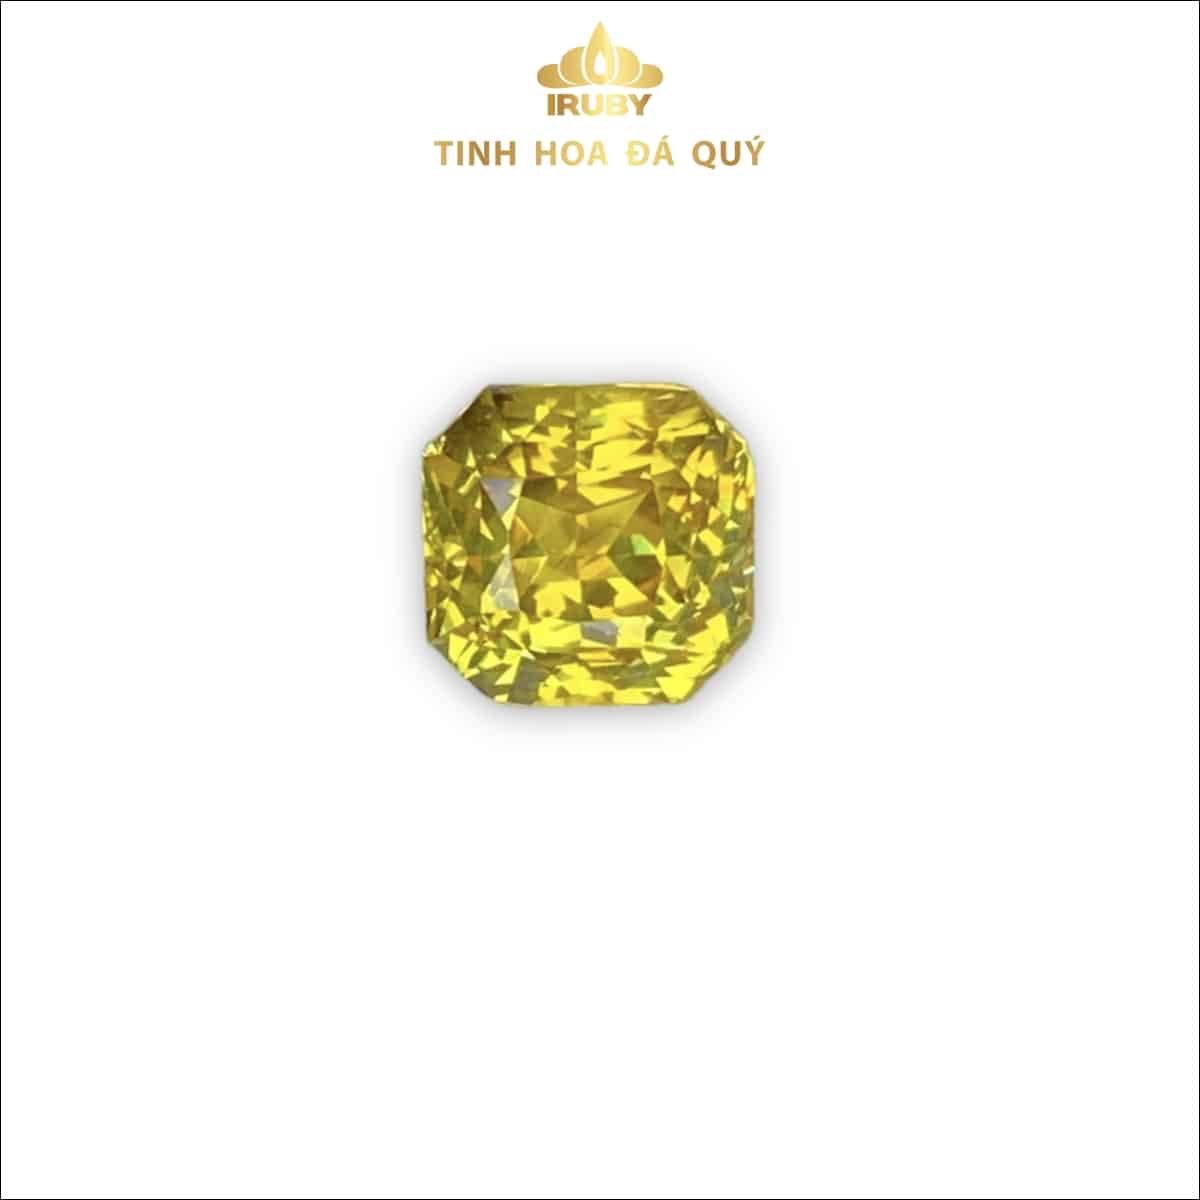 Viên Sapphire vàng tự nhiên siêu đẹp 2,55ct - IRSY 233255